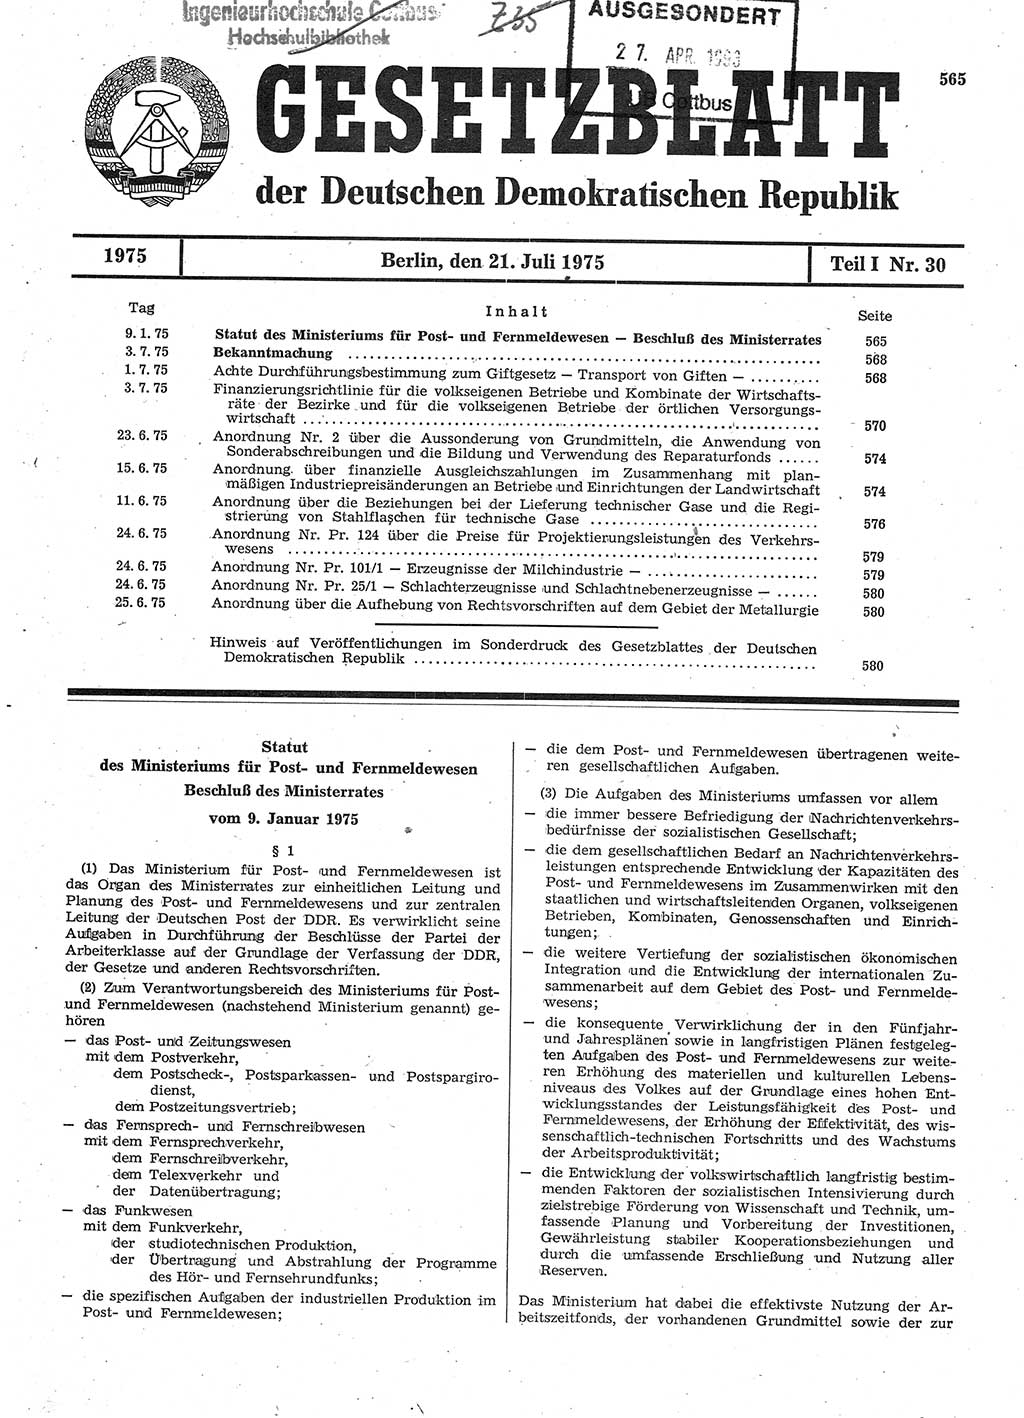 Gesetzblatt (GBl.) der Deutschen Demokratischen Republik (DDR) Teil Ⅰ 1975, Seite 565 (GBl. DDR Ⅰ 1975, S. 565)